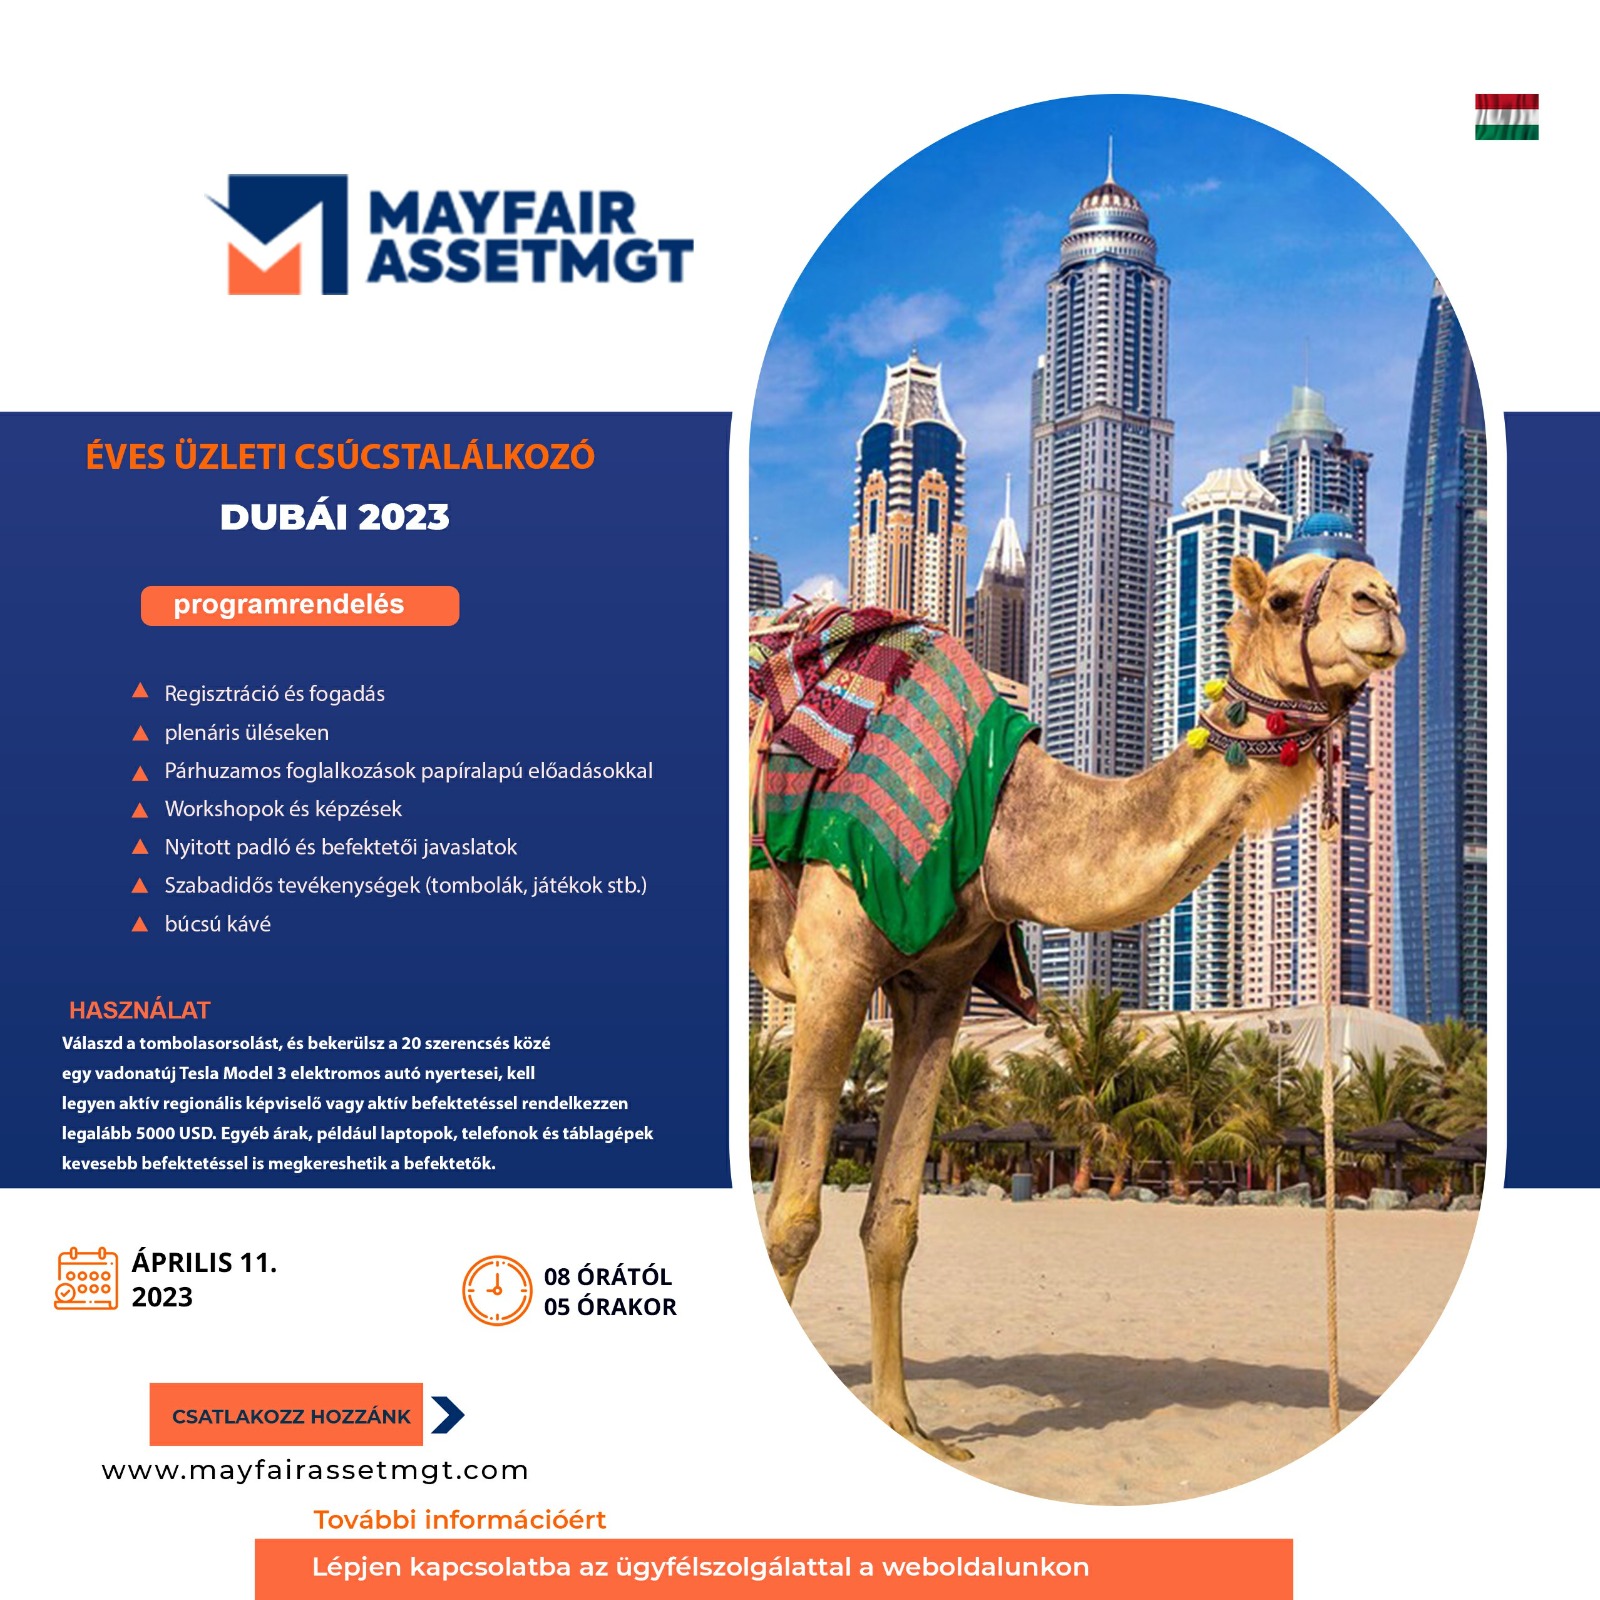 Mayfair Asset - üzleti csúcstalálkozó Dubaiban